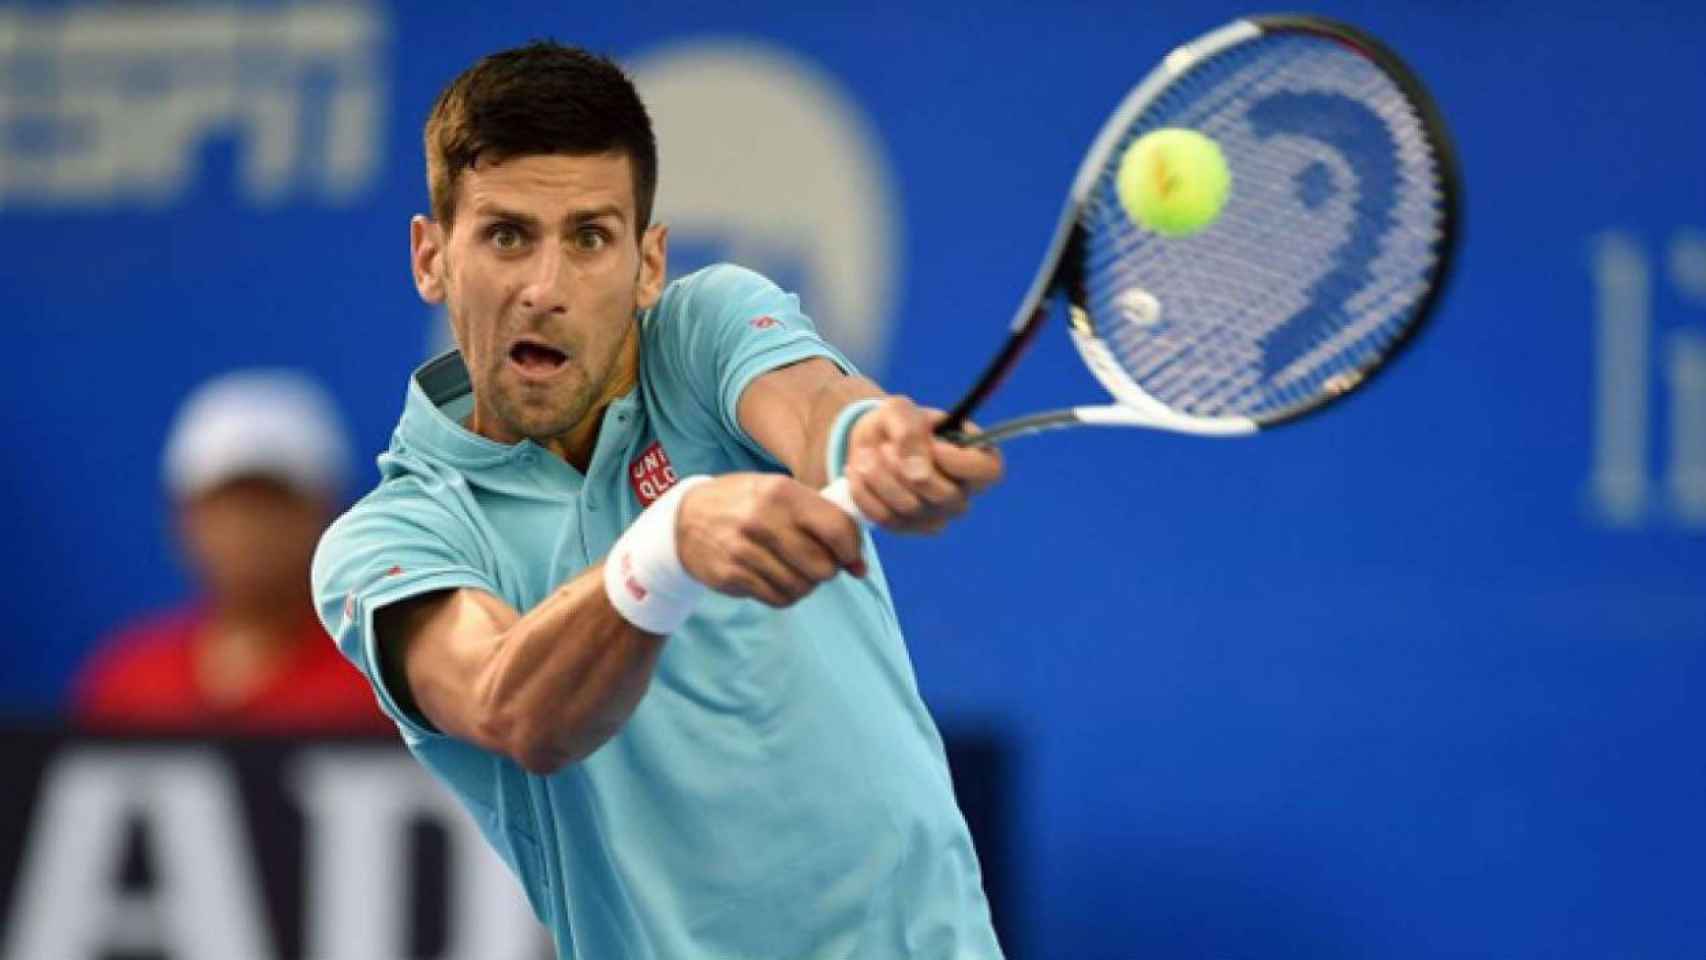 Novak Djokovic no levanta cabeza este 2018 y podría apuntarse a jugar el Godó de Barcelona para preparar Roland Garros / EFE